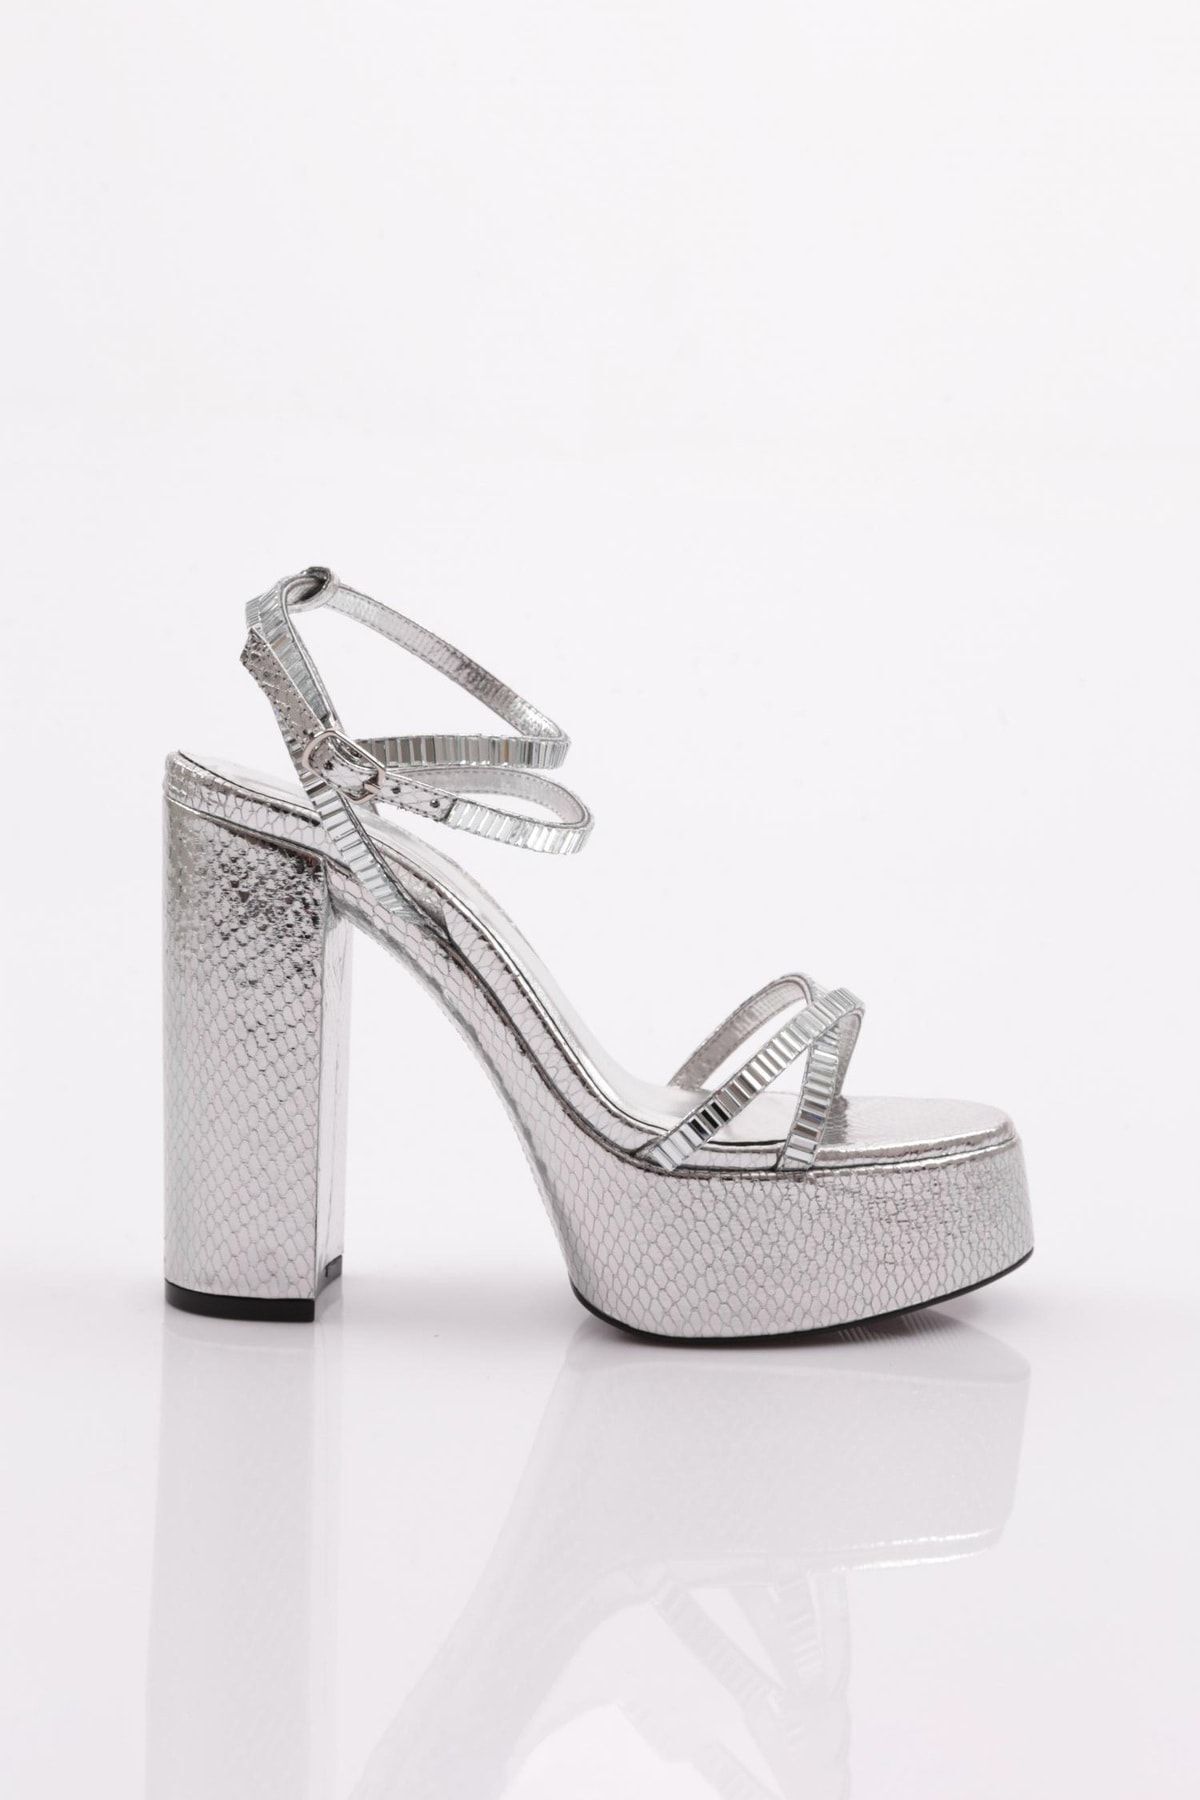 Dgn 27 Kadın Taş Şeritli Topuklu Ayakkabı Gümüş Yılan Metalik